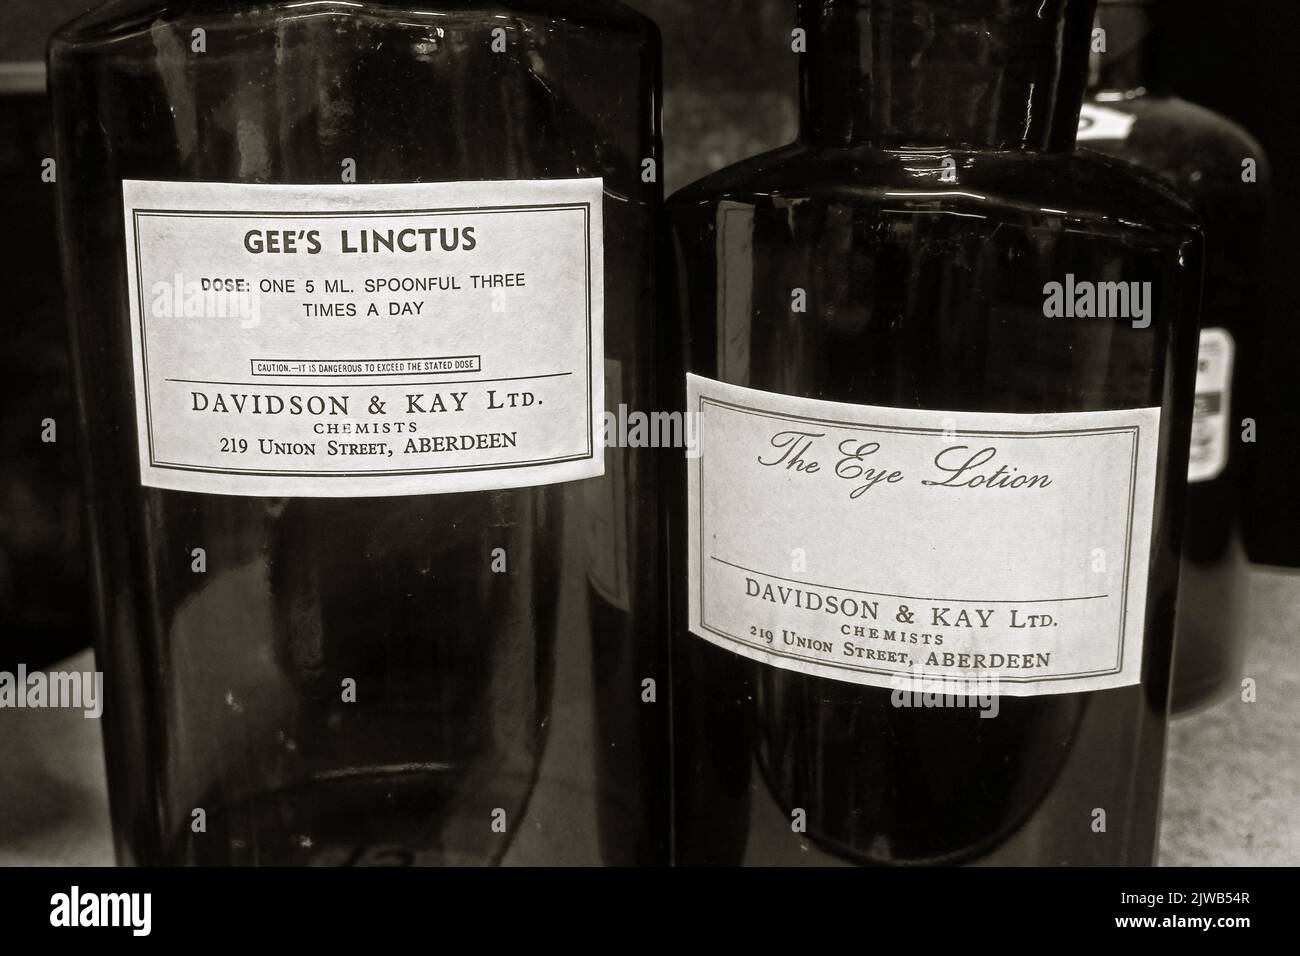 Gee's Linctus & The Eye Lotion – zubereitet von Davidson & Kay, Chemists of 219 Union Street, Aberdeen, Aberdeenshire, Schottland, Großbritannien, AB10 1TL Stockfoto